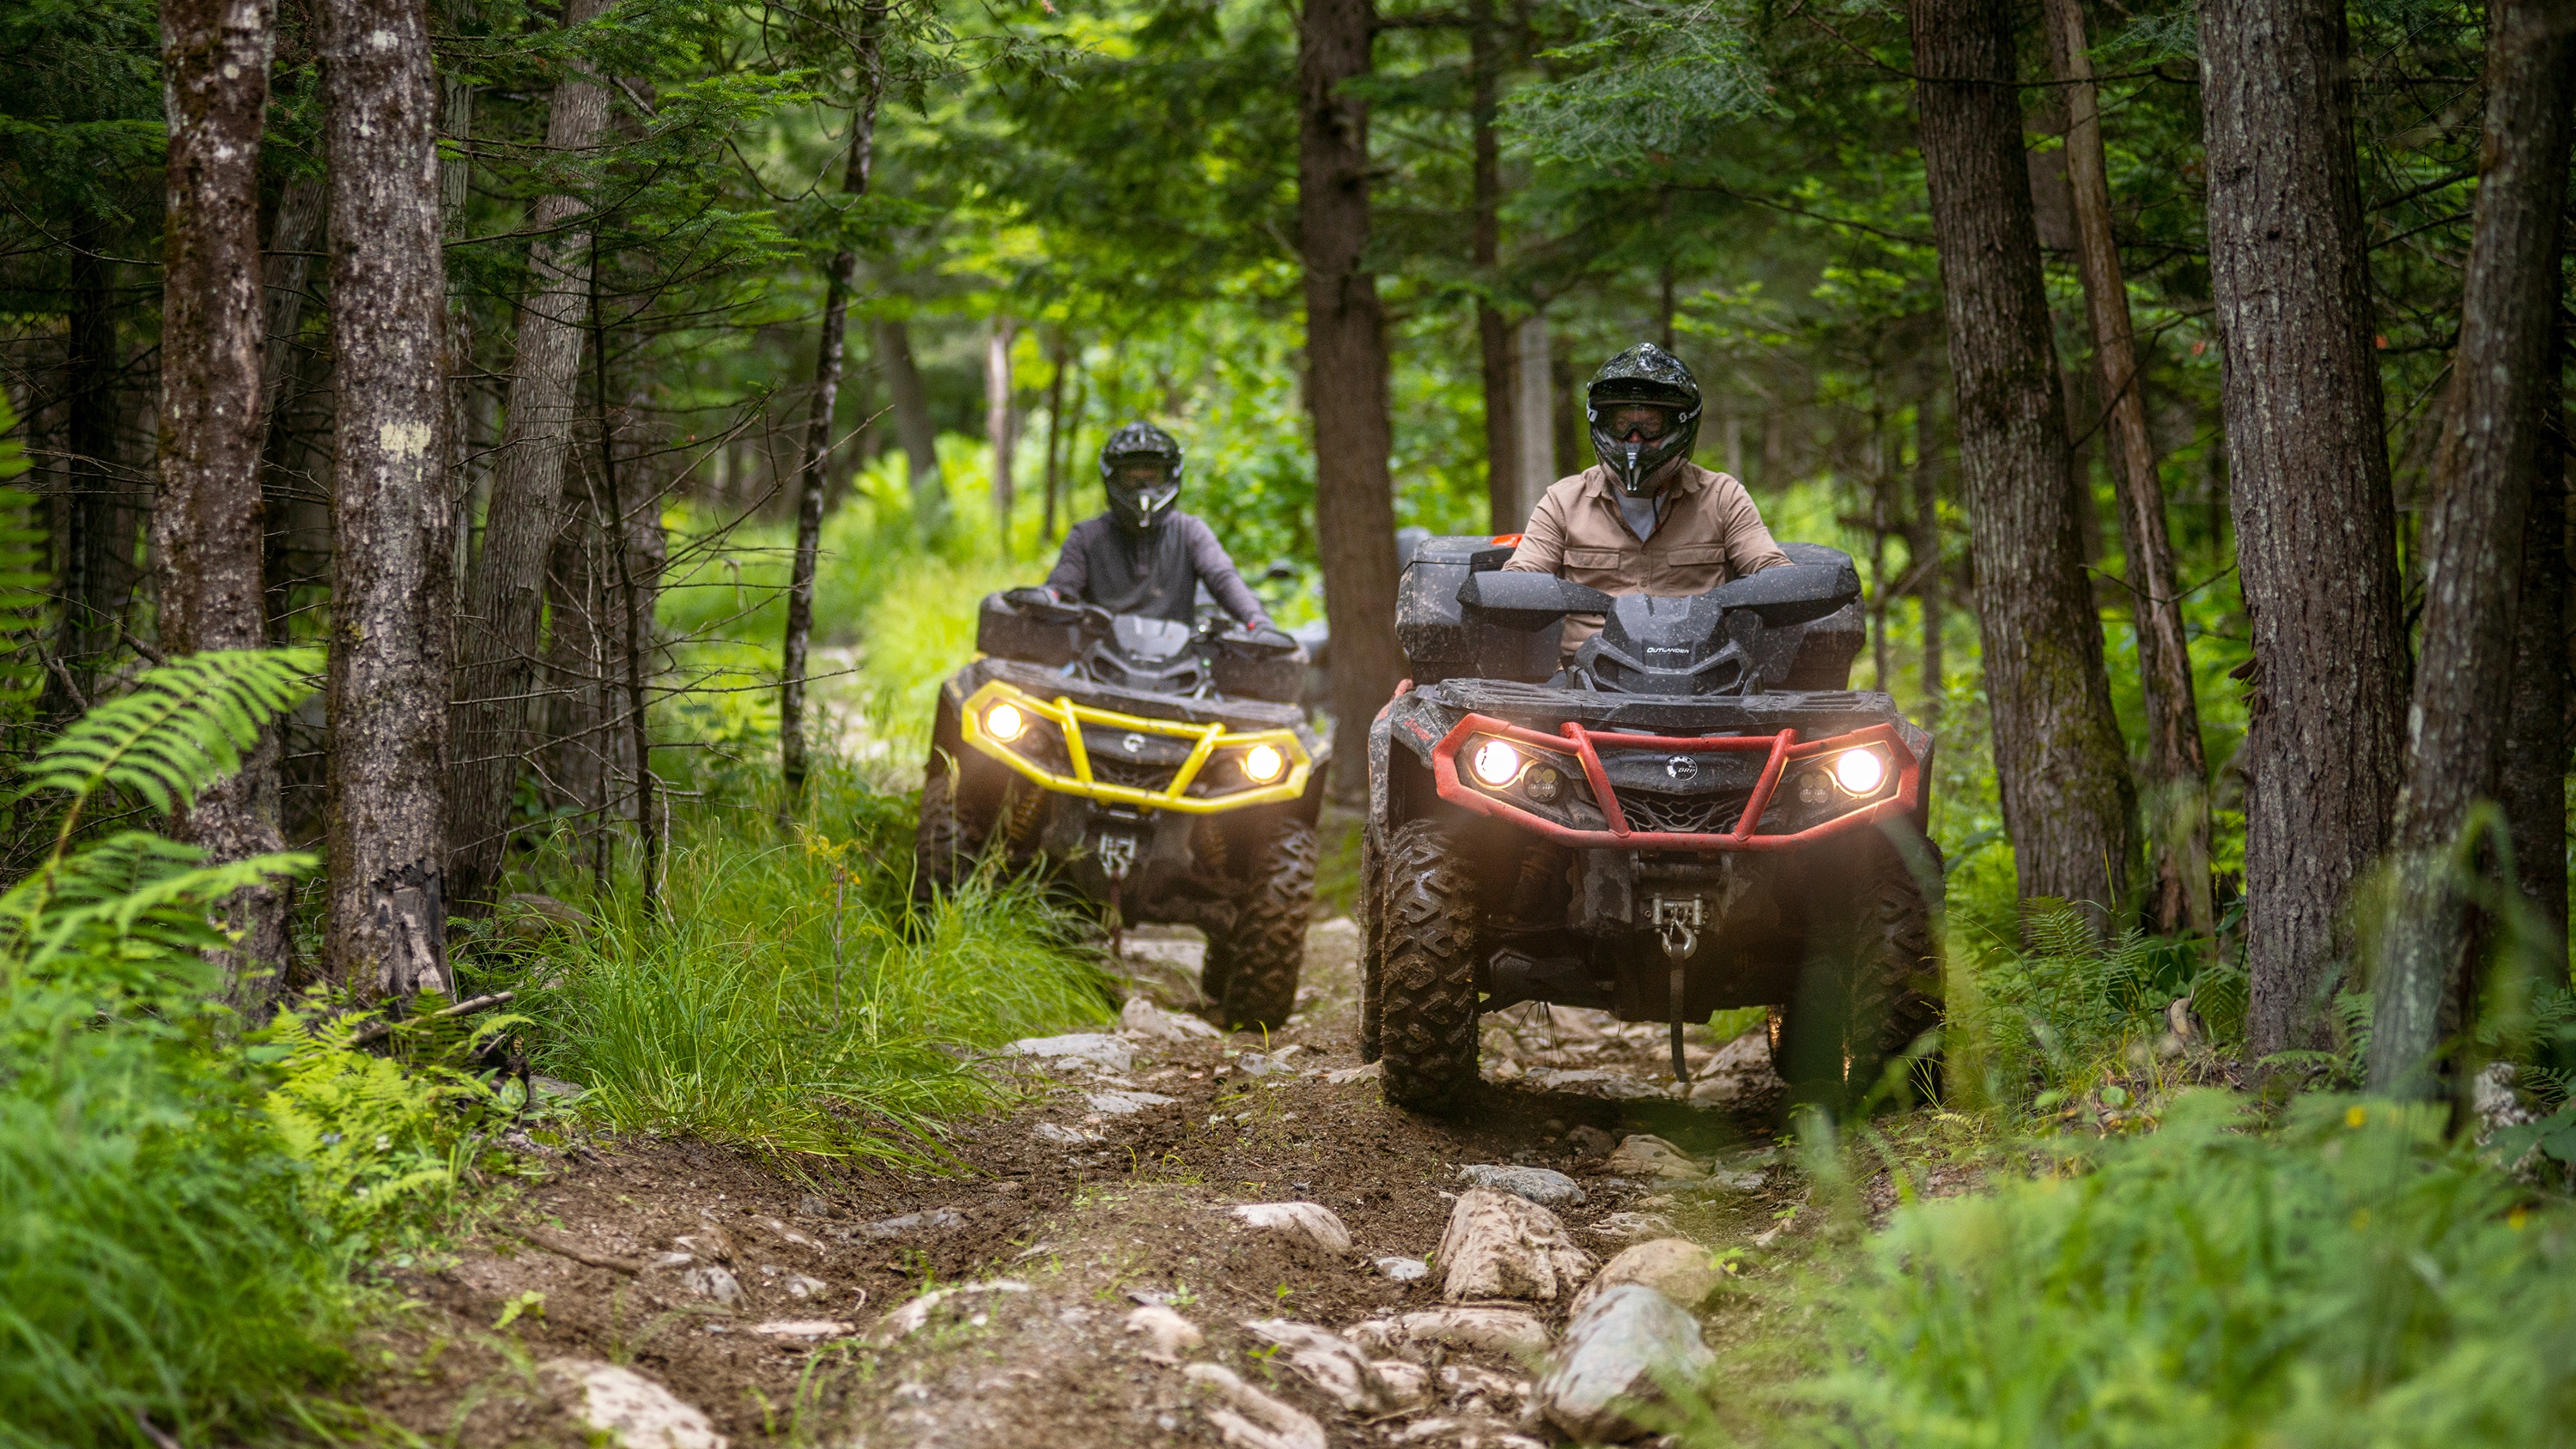  Dvojica muškaraca vozeći svoj Outlander ATV šumskom stazom